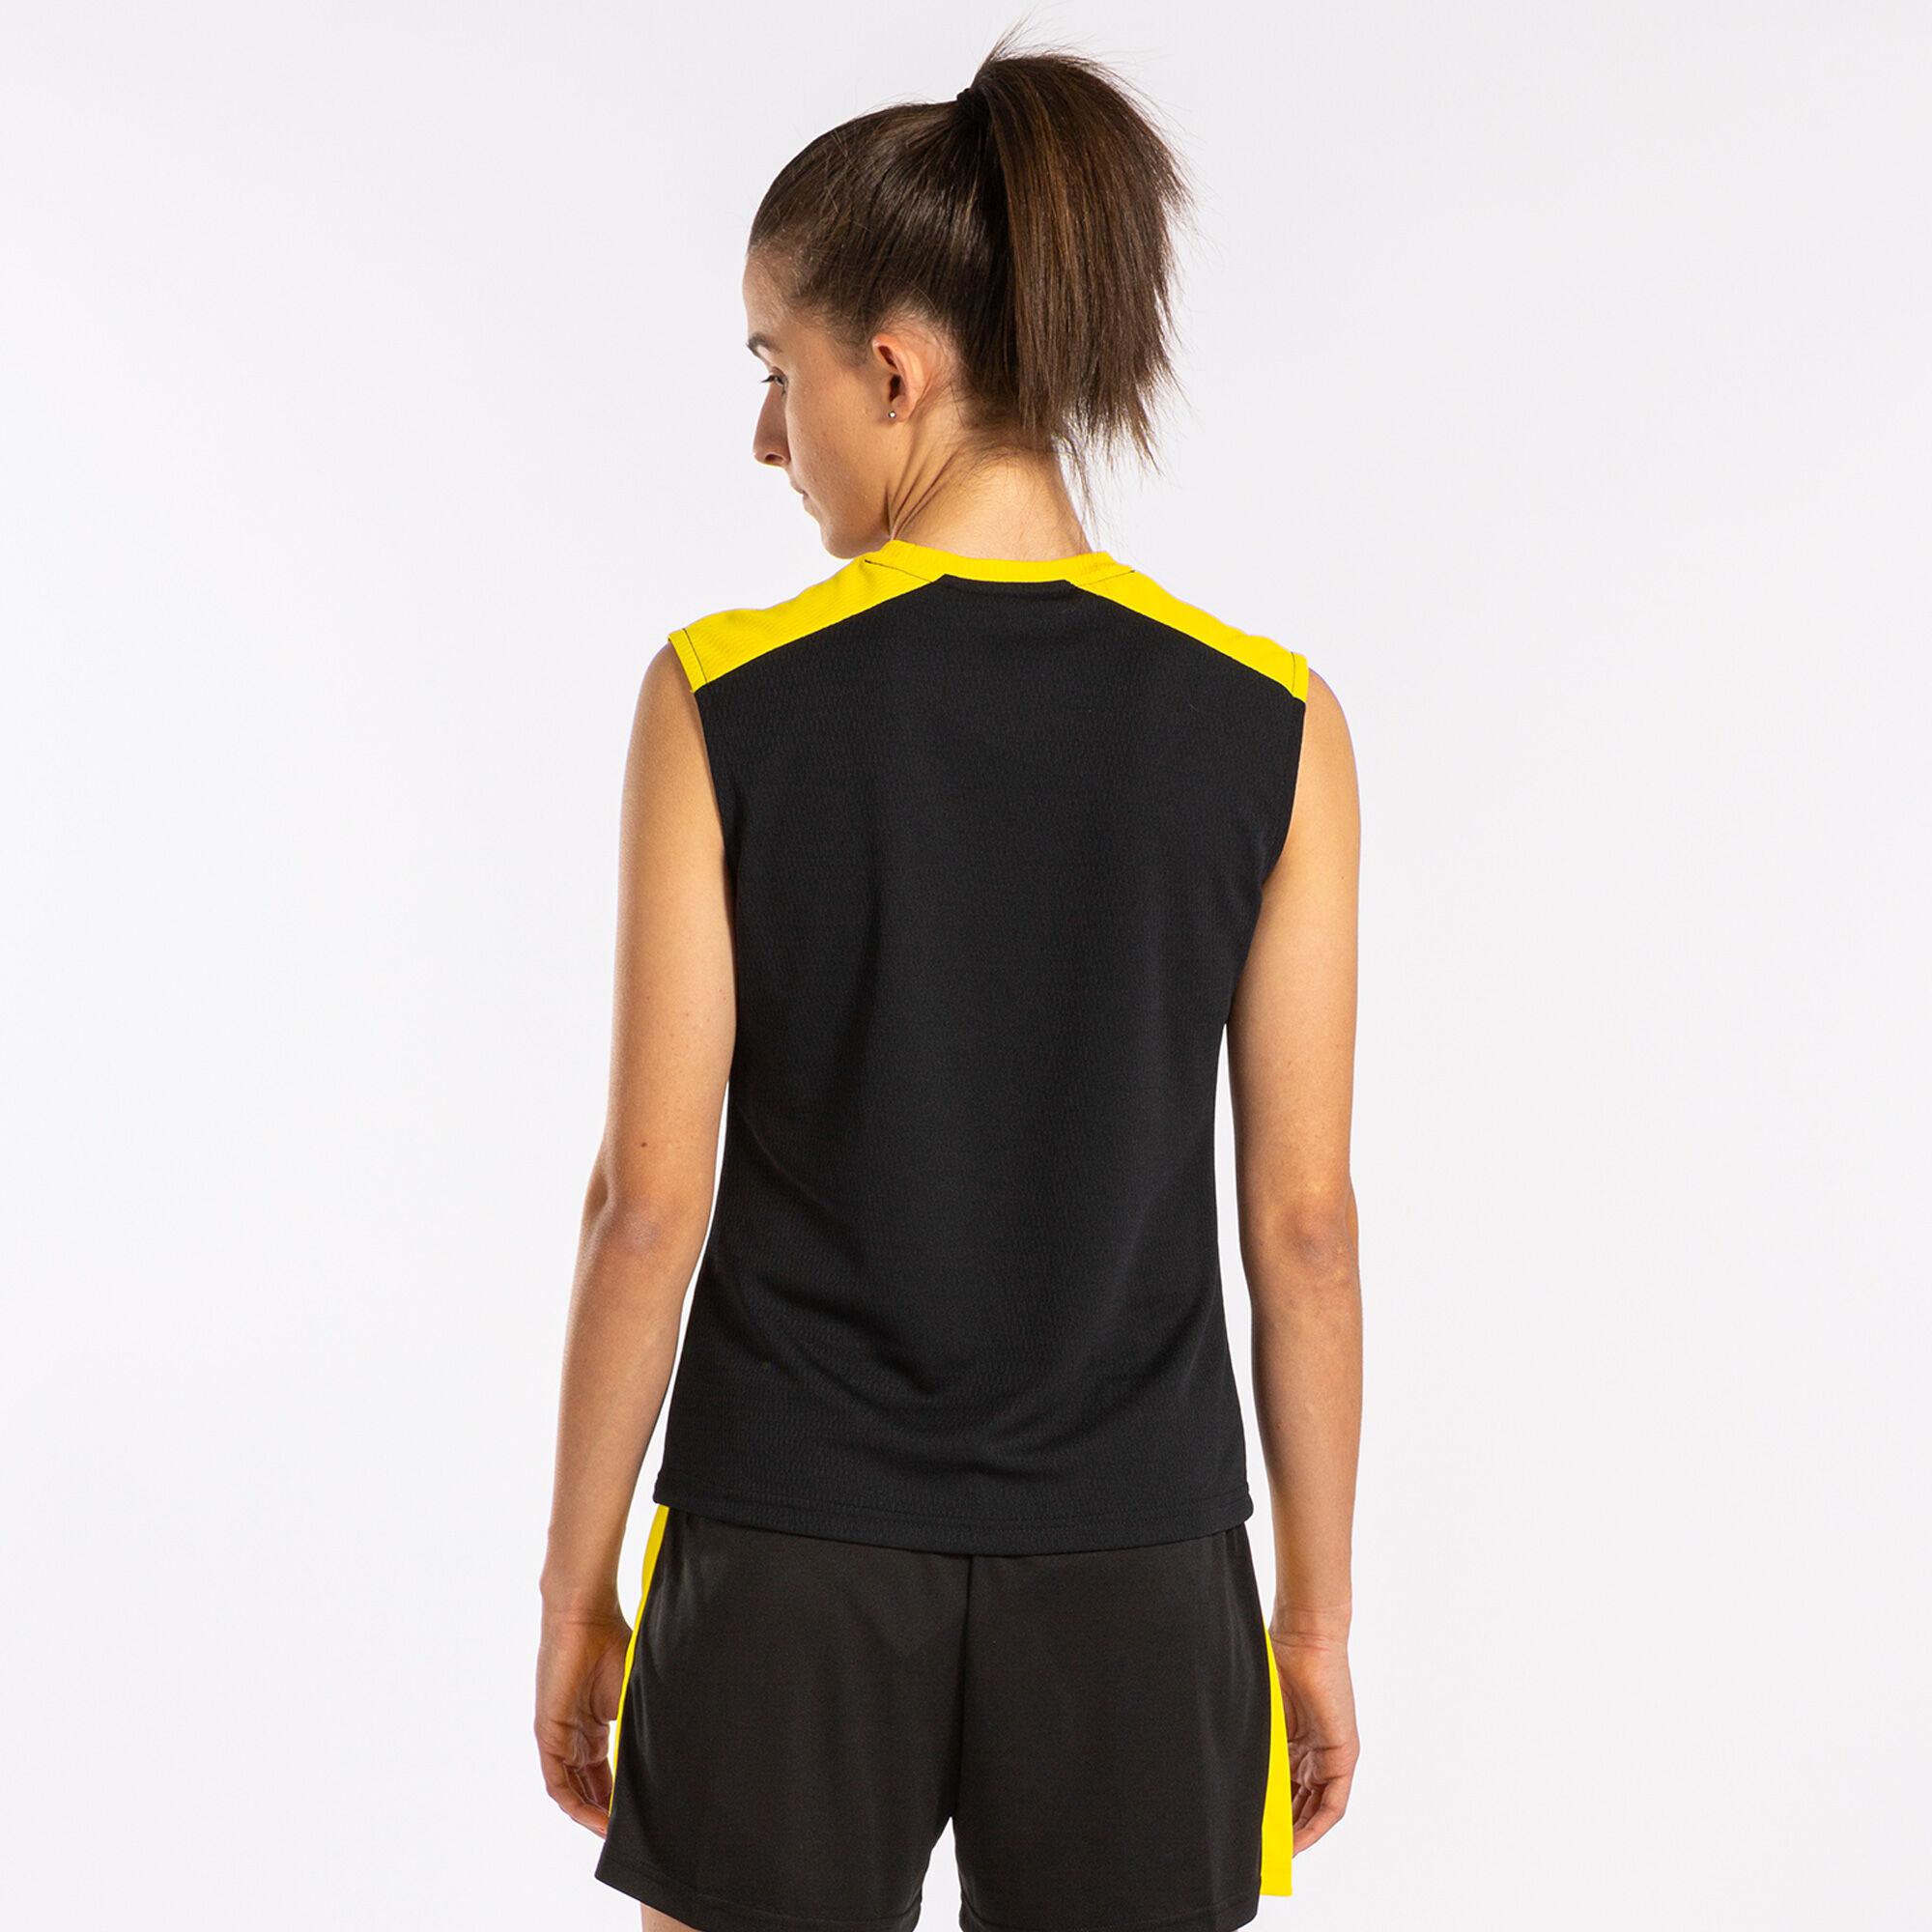 T-shirt de alça mulher Eco Championship preto amarelo